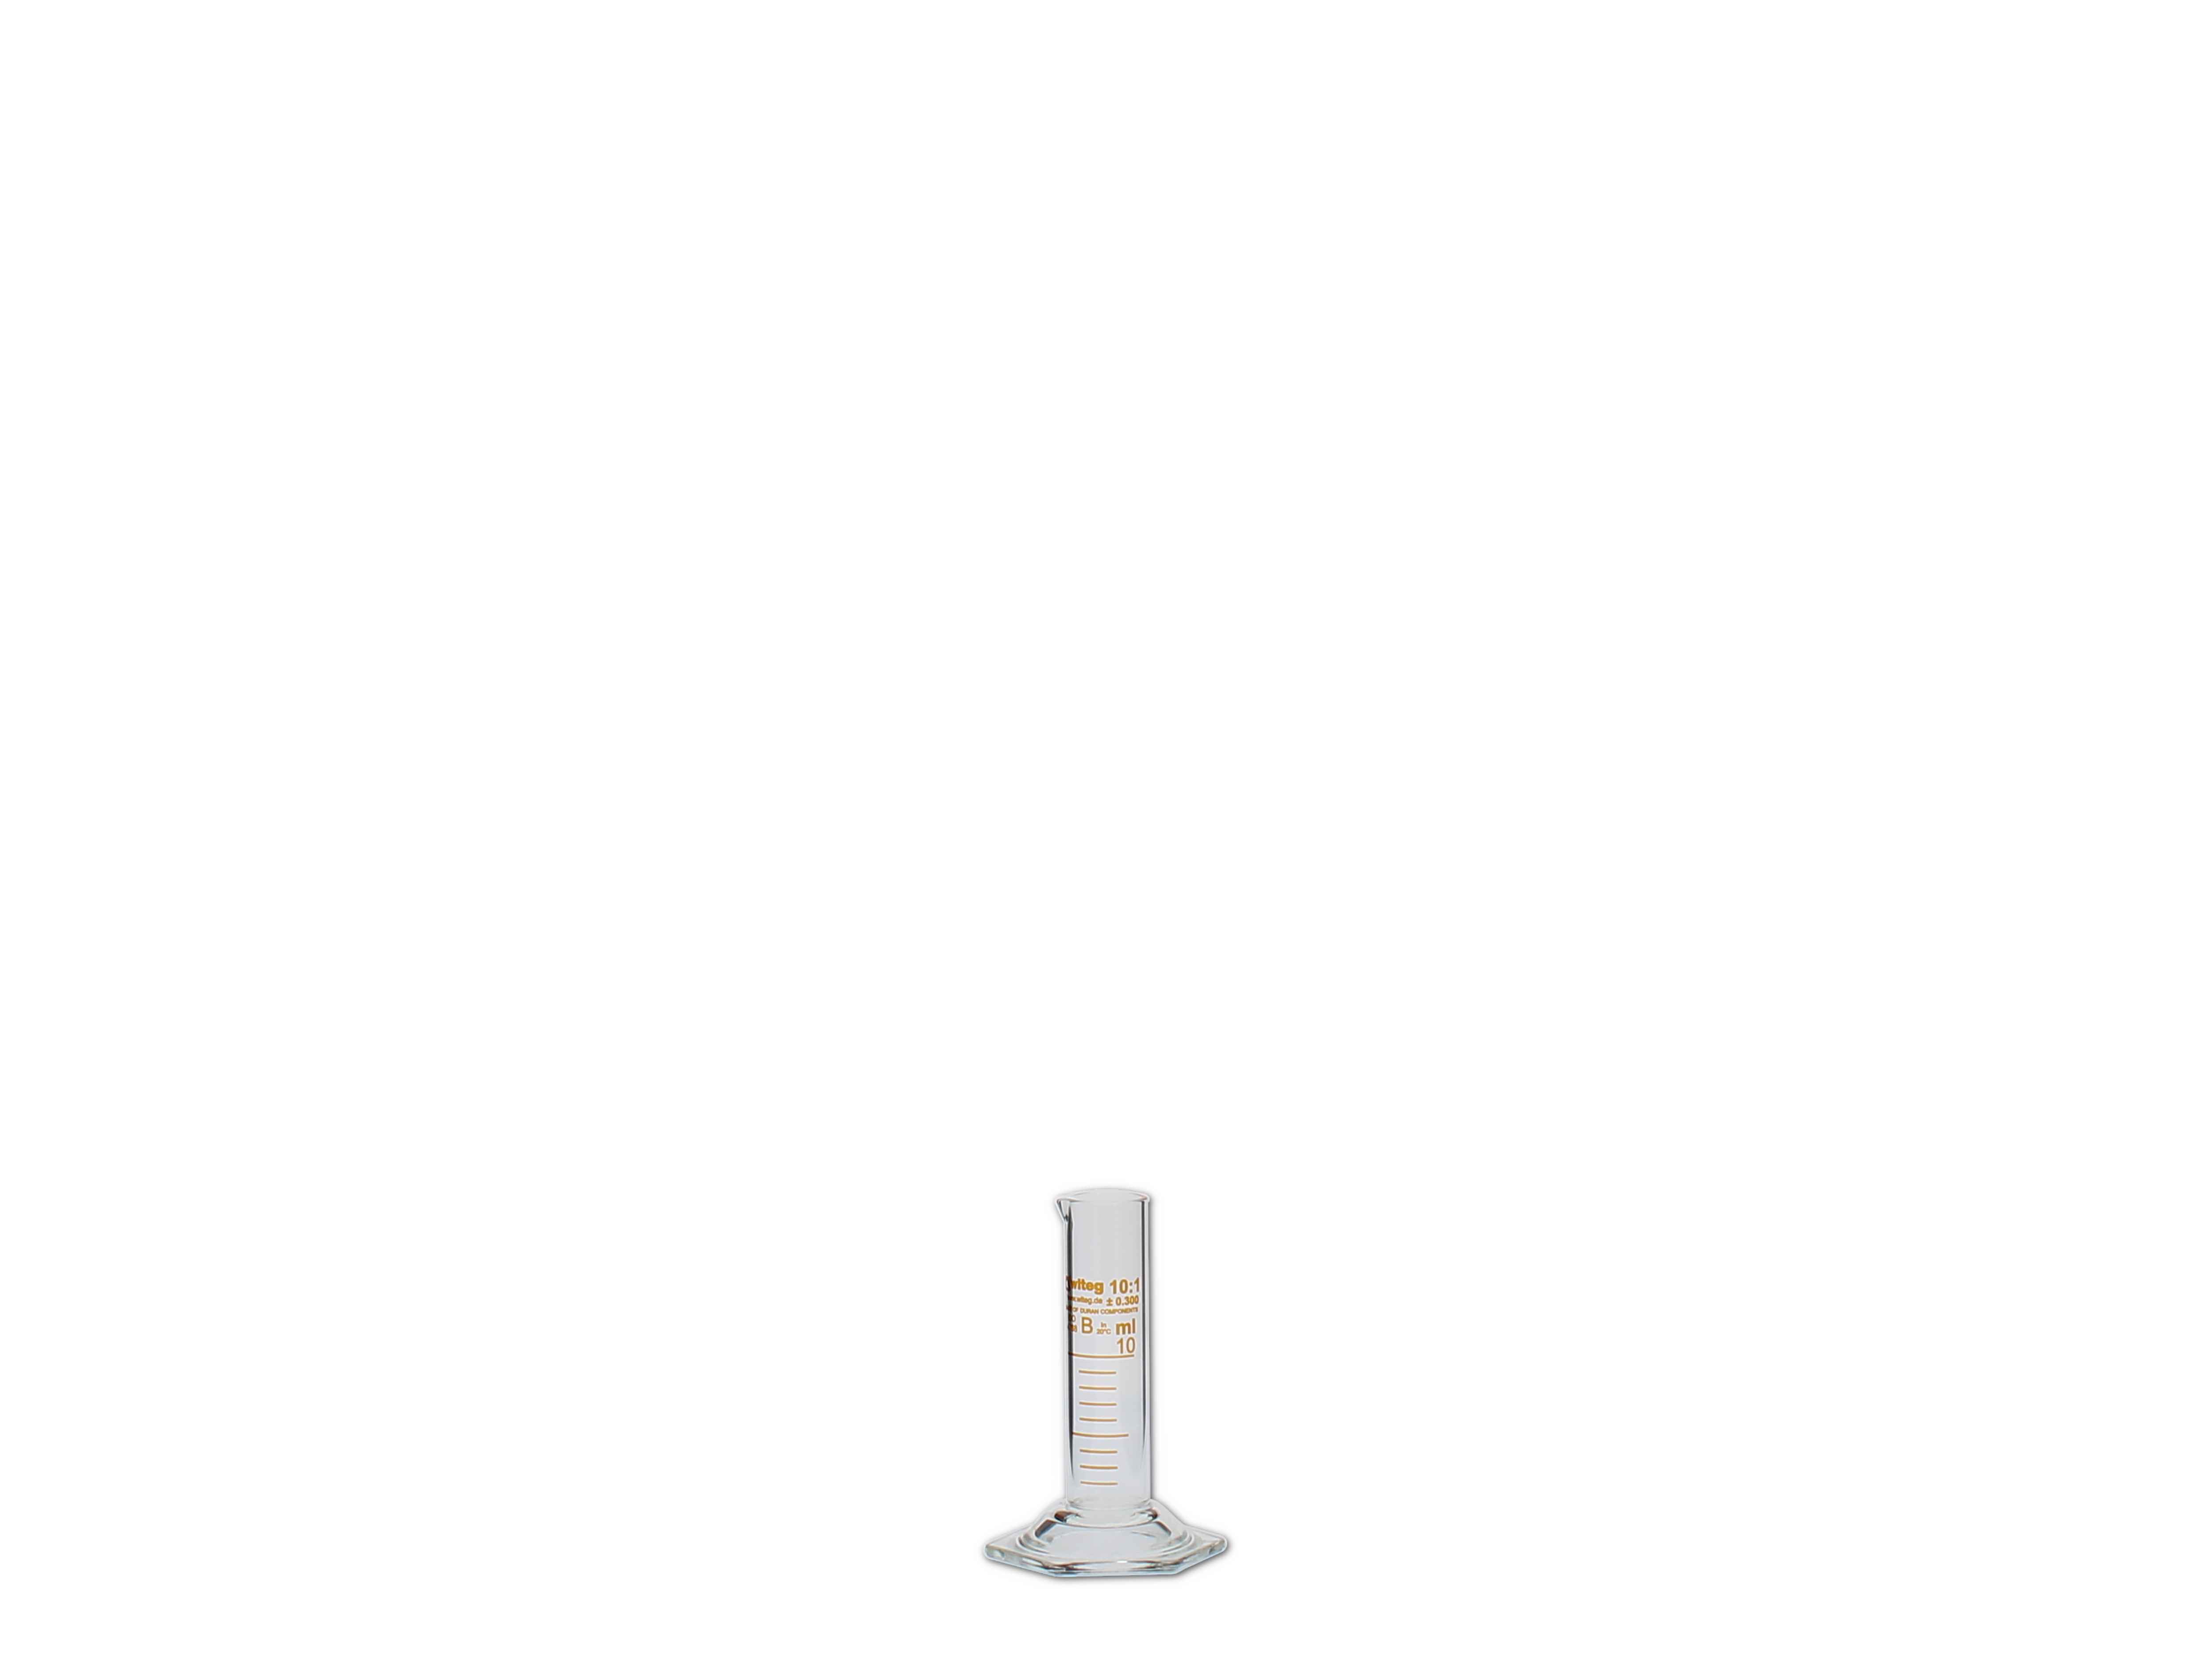    Messzylinder, Glas, graduiert - 10ml (niedere Form)